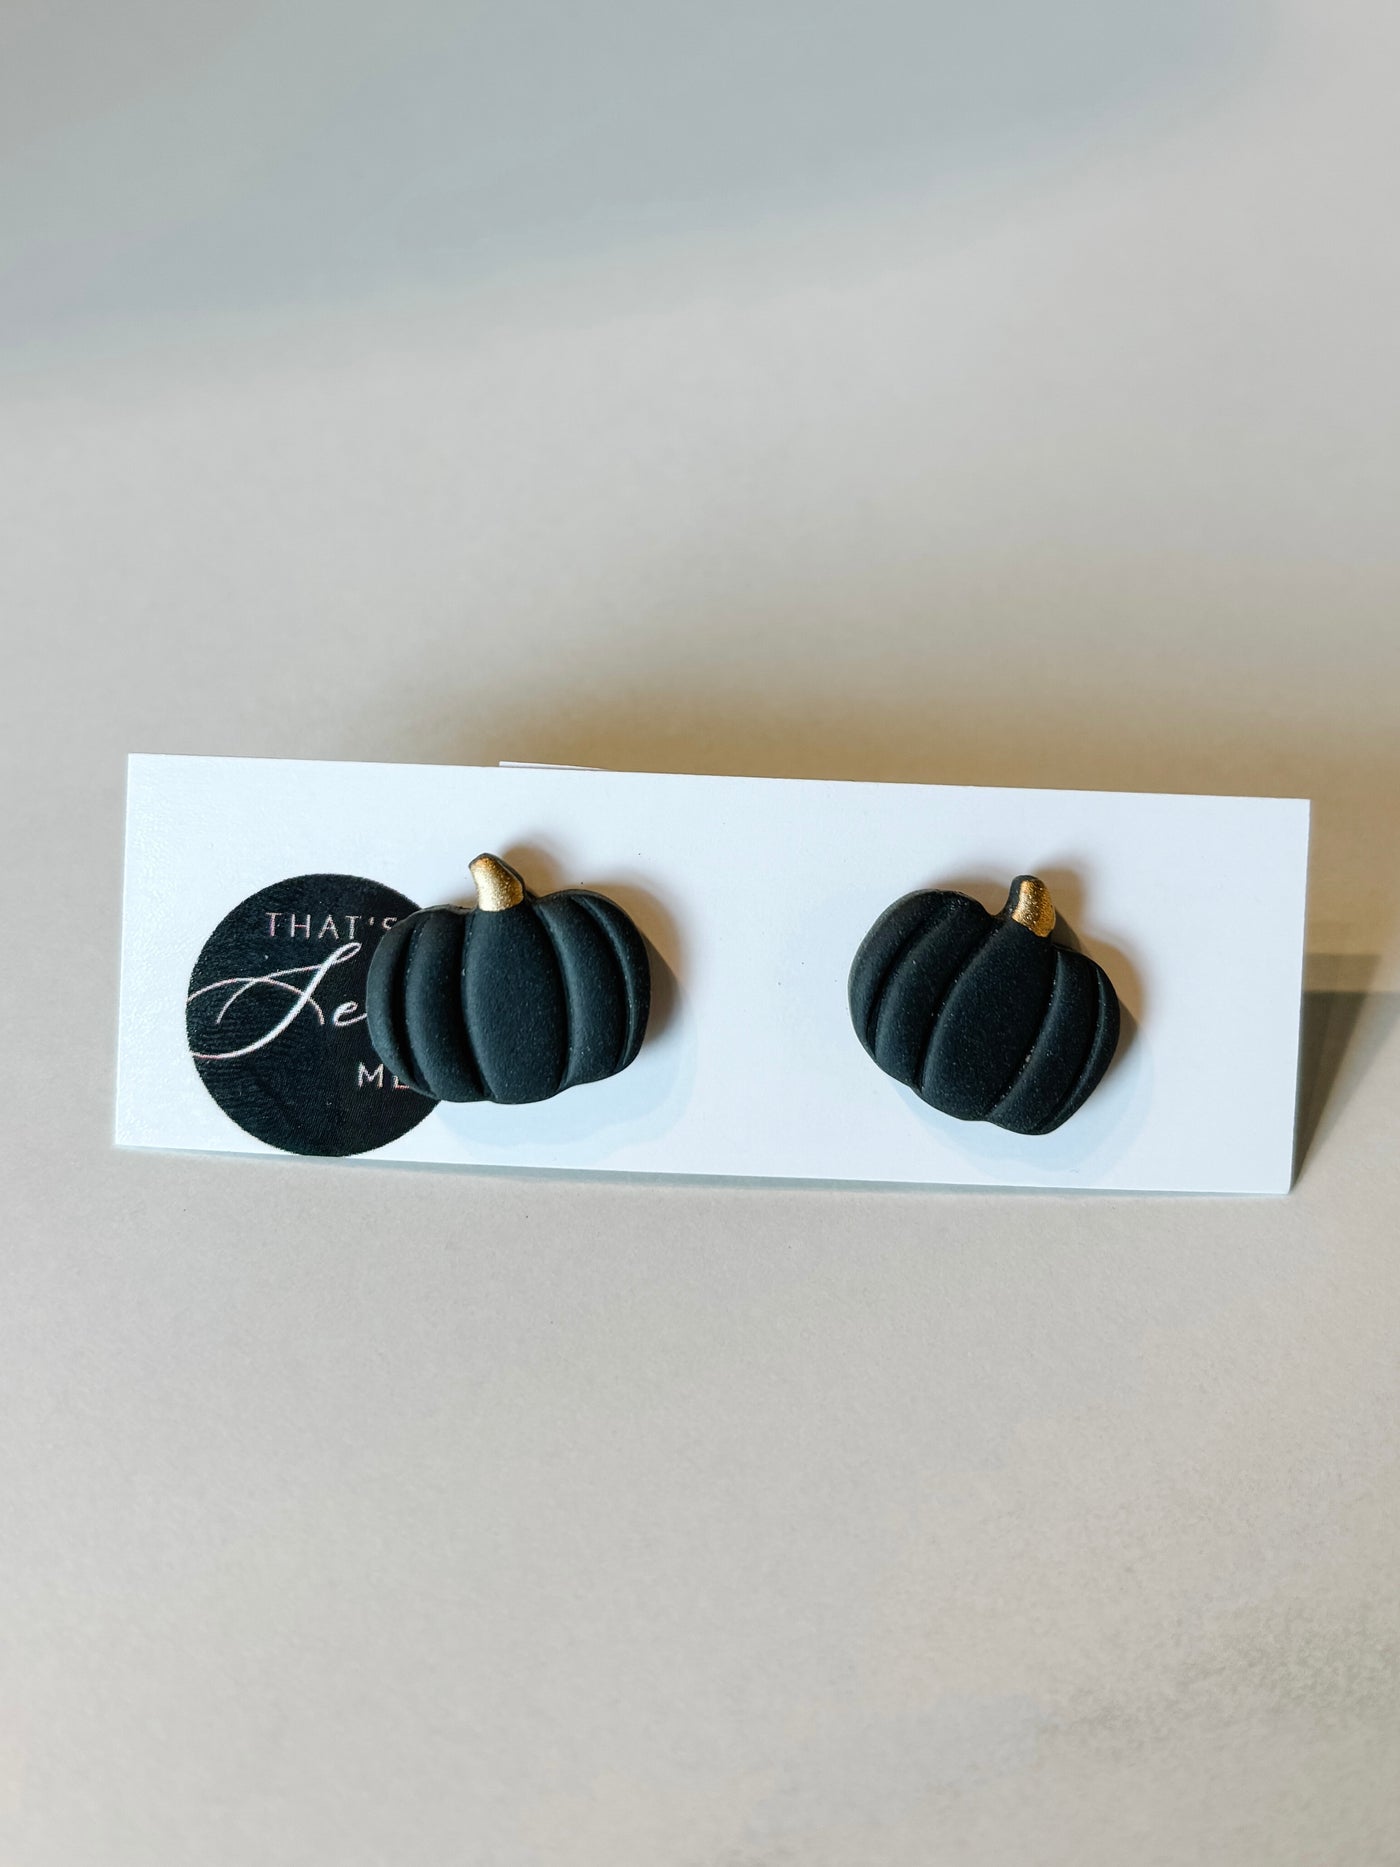 Pumpkin Clay Earrings